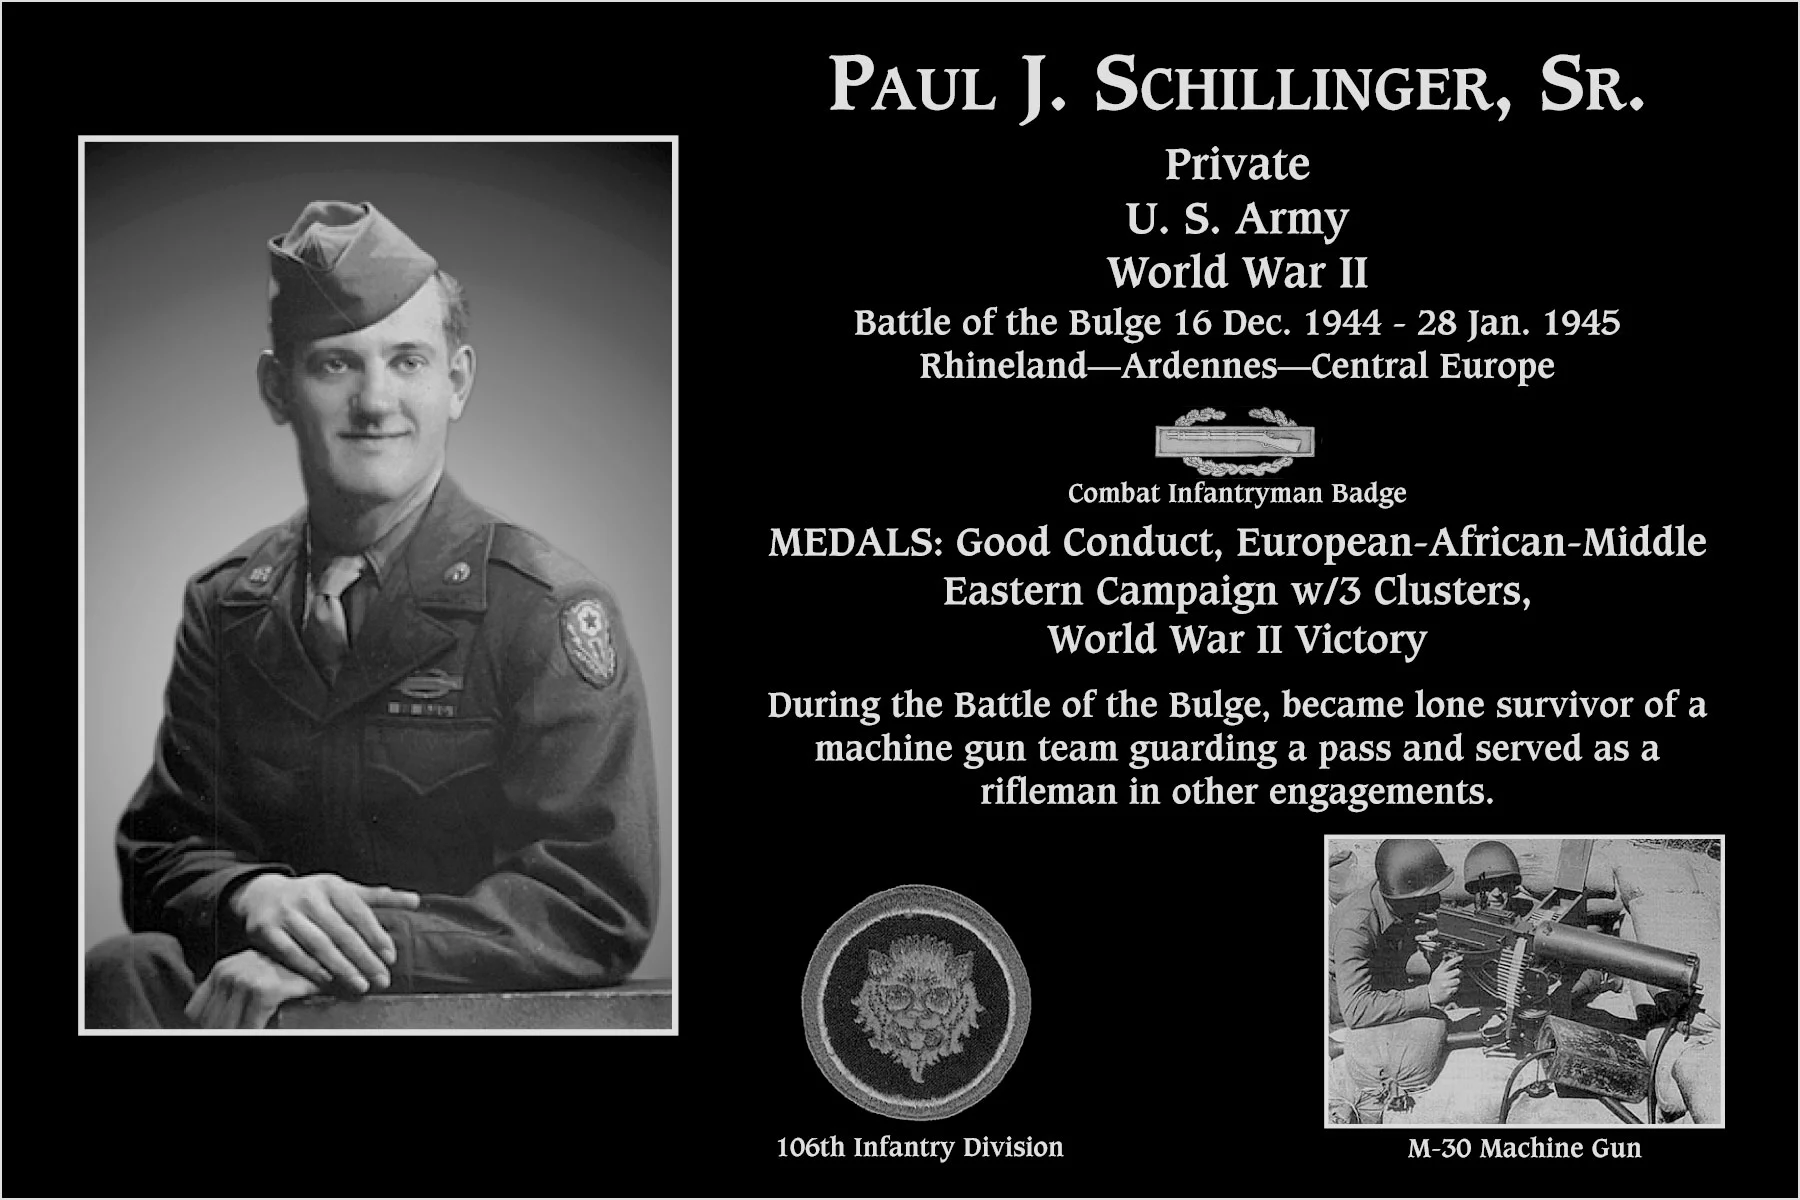 Paul J Schillinger